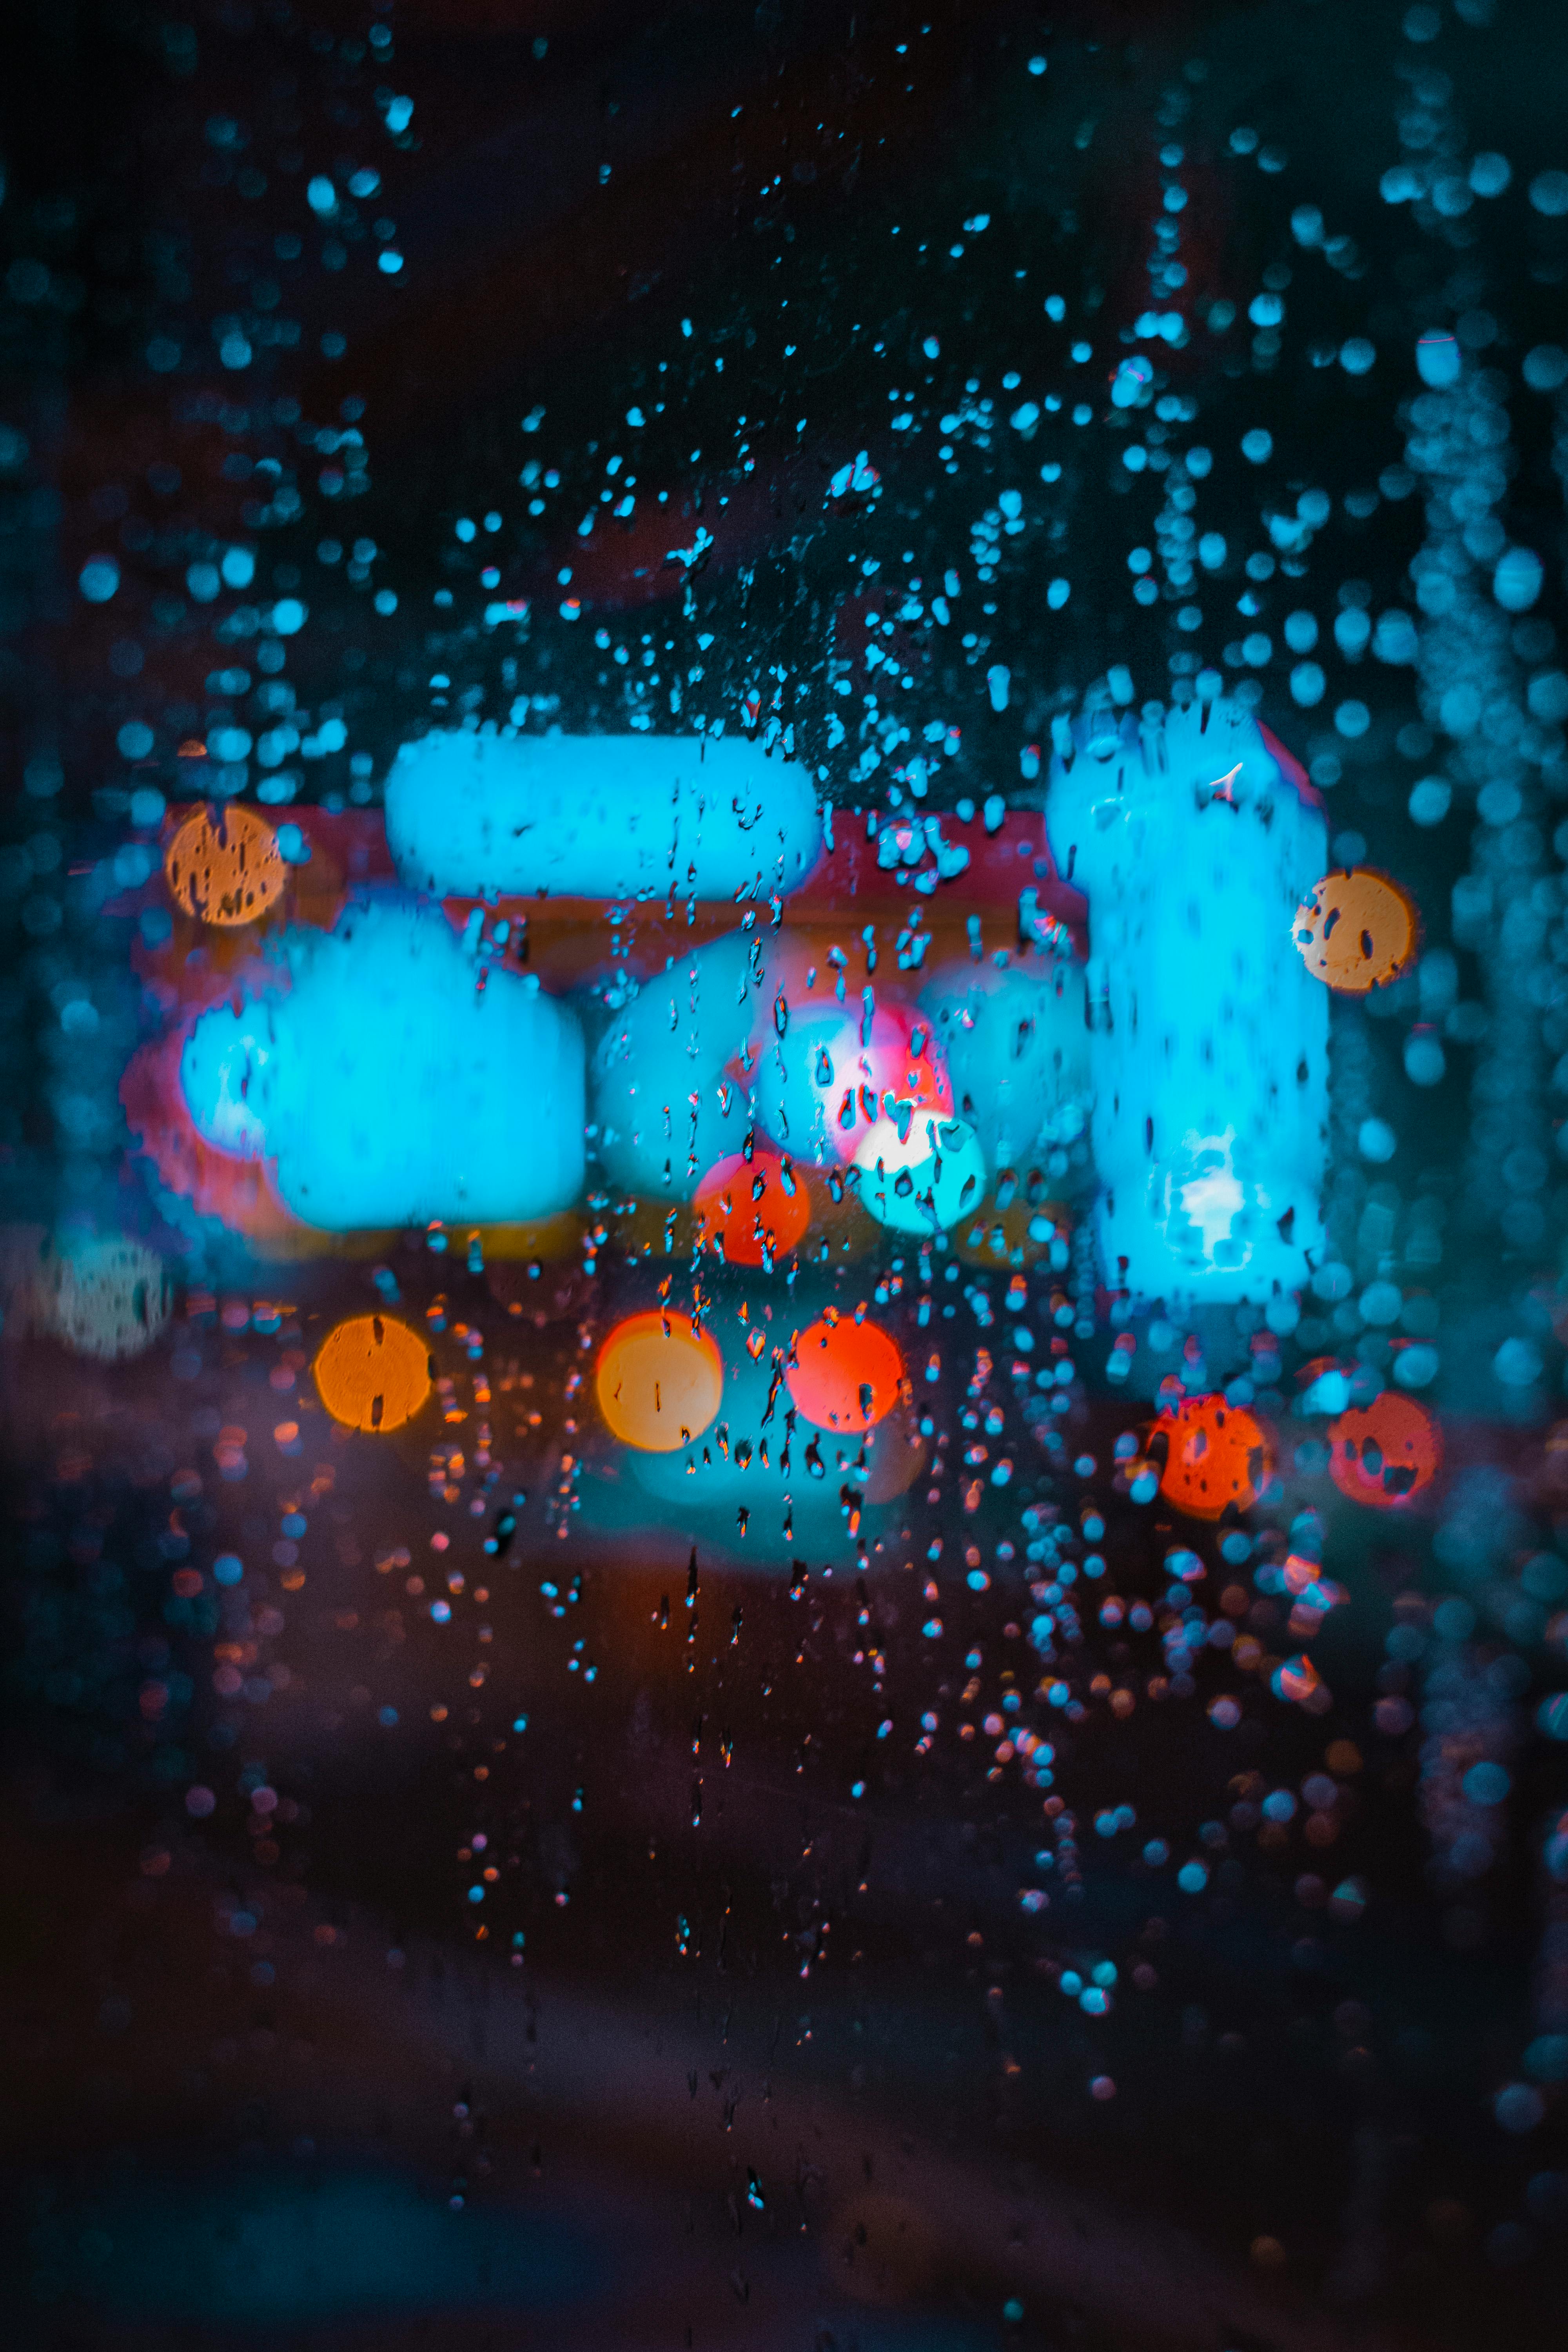 Raindrops Rain Window  Free photo on Pixabay  Pixabay